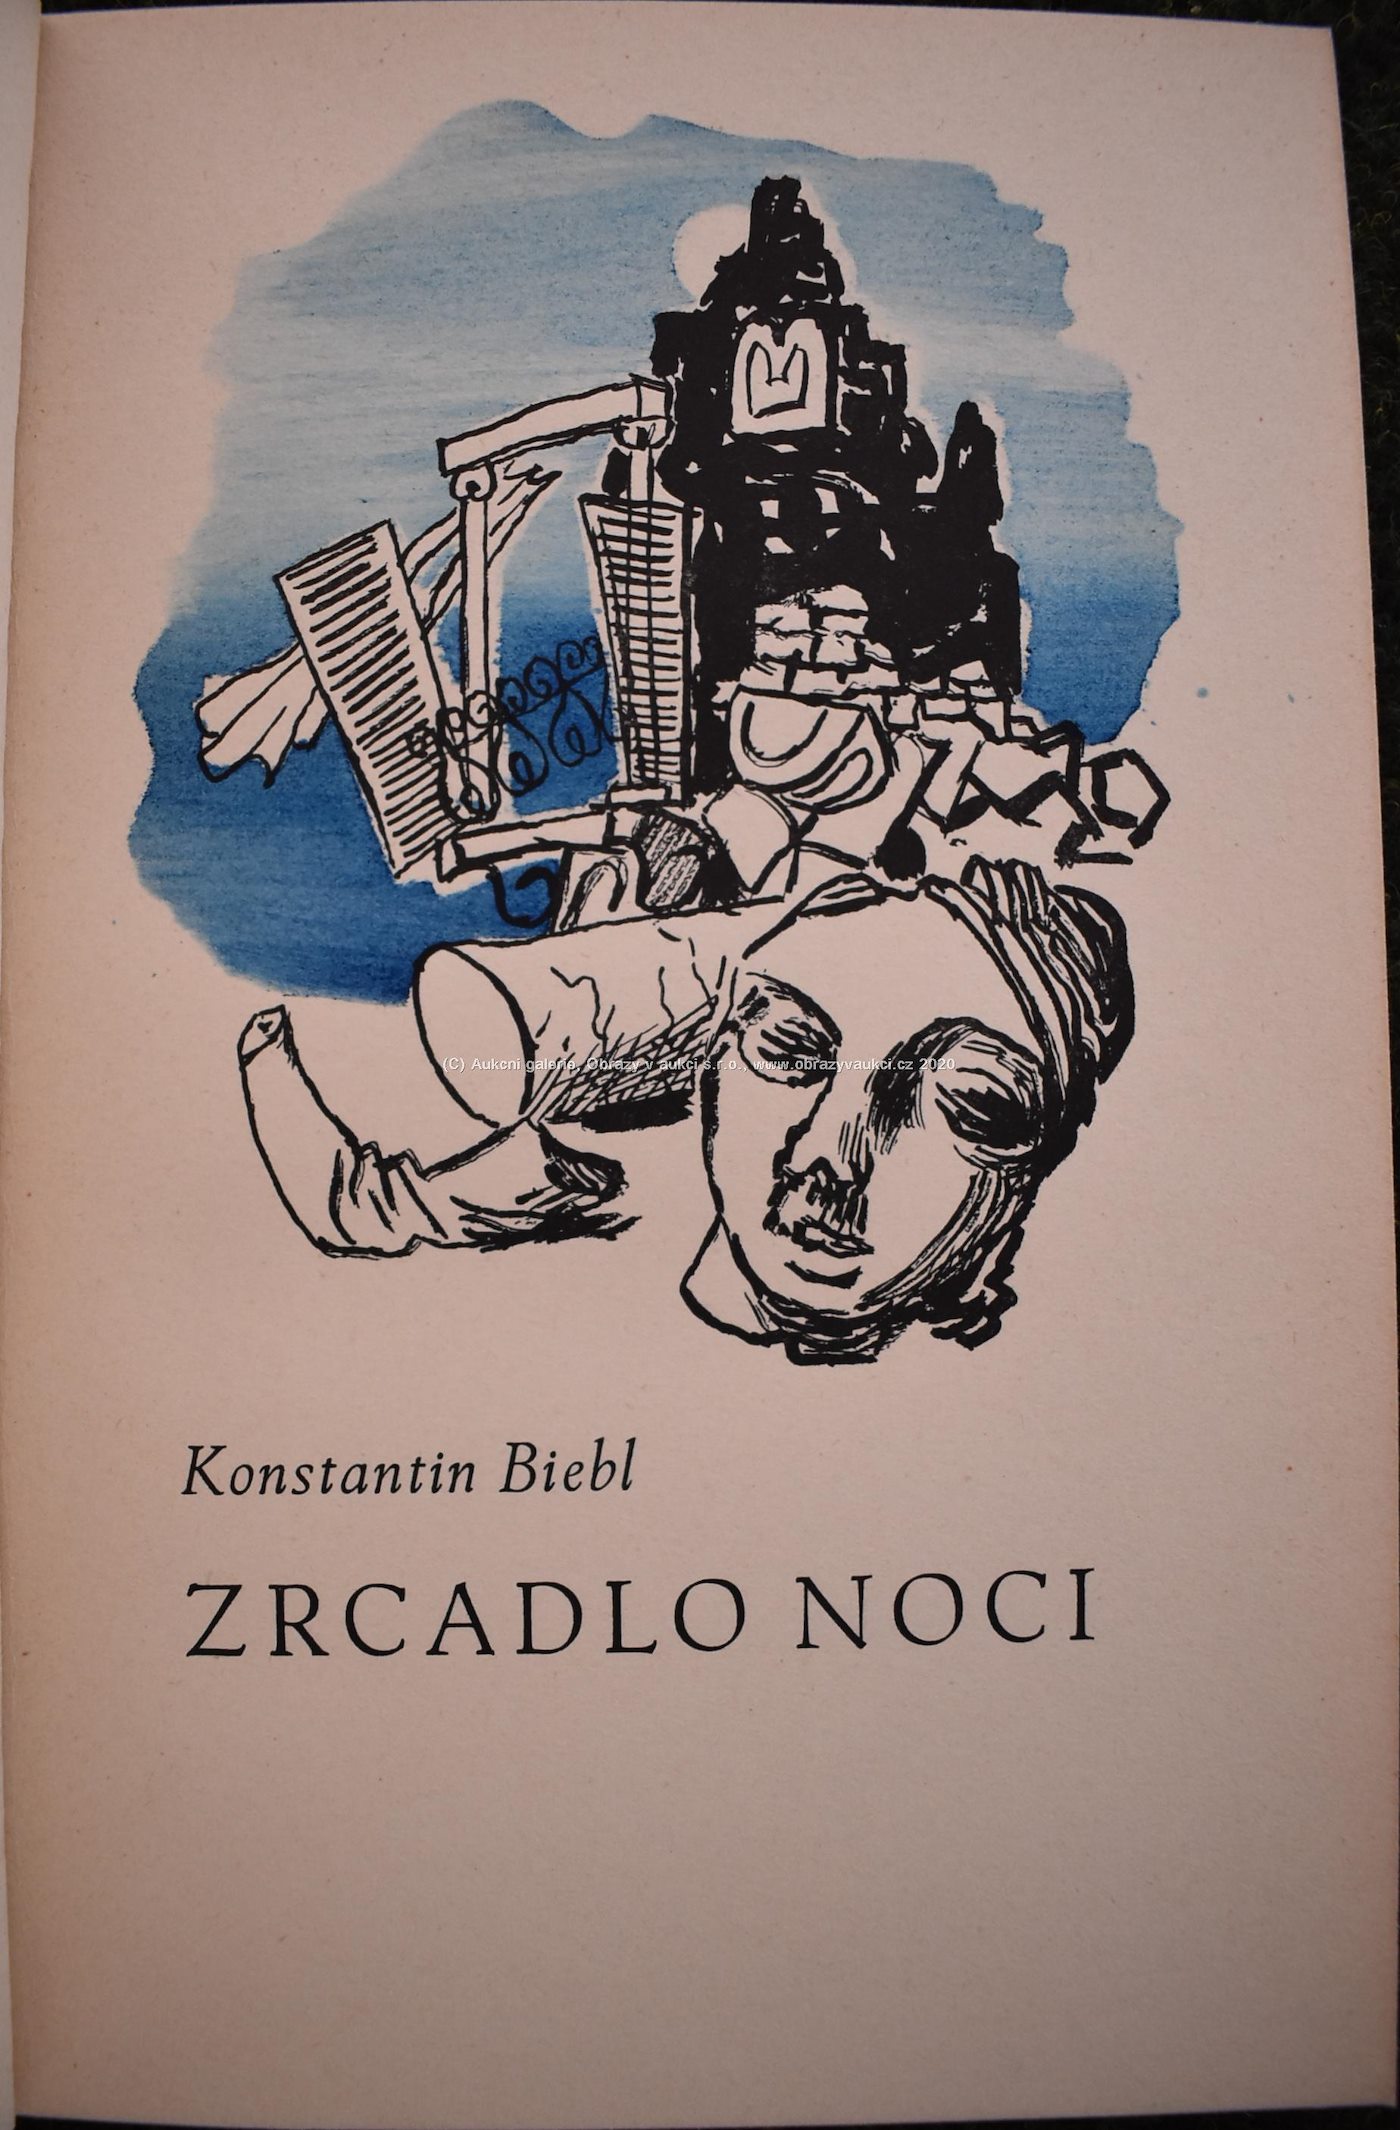 V.Sedláček, J.Čapek, V.Tittelbach - Soubor 4 bibliofilií